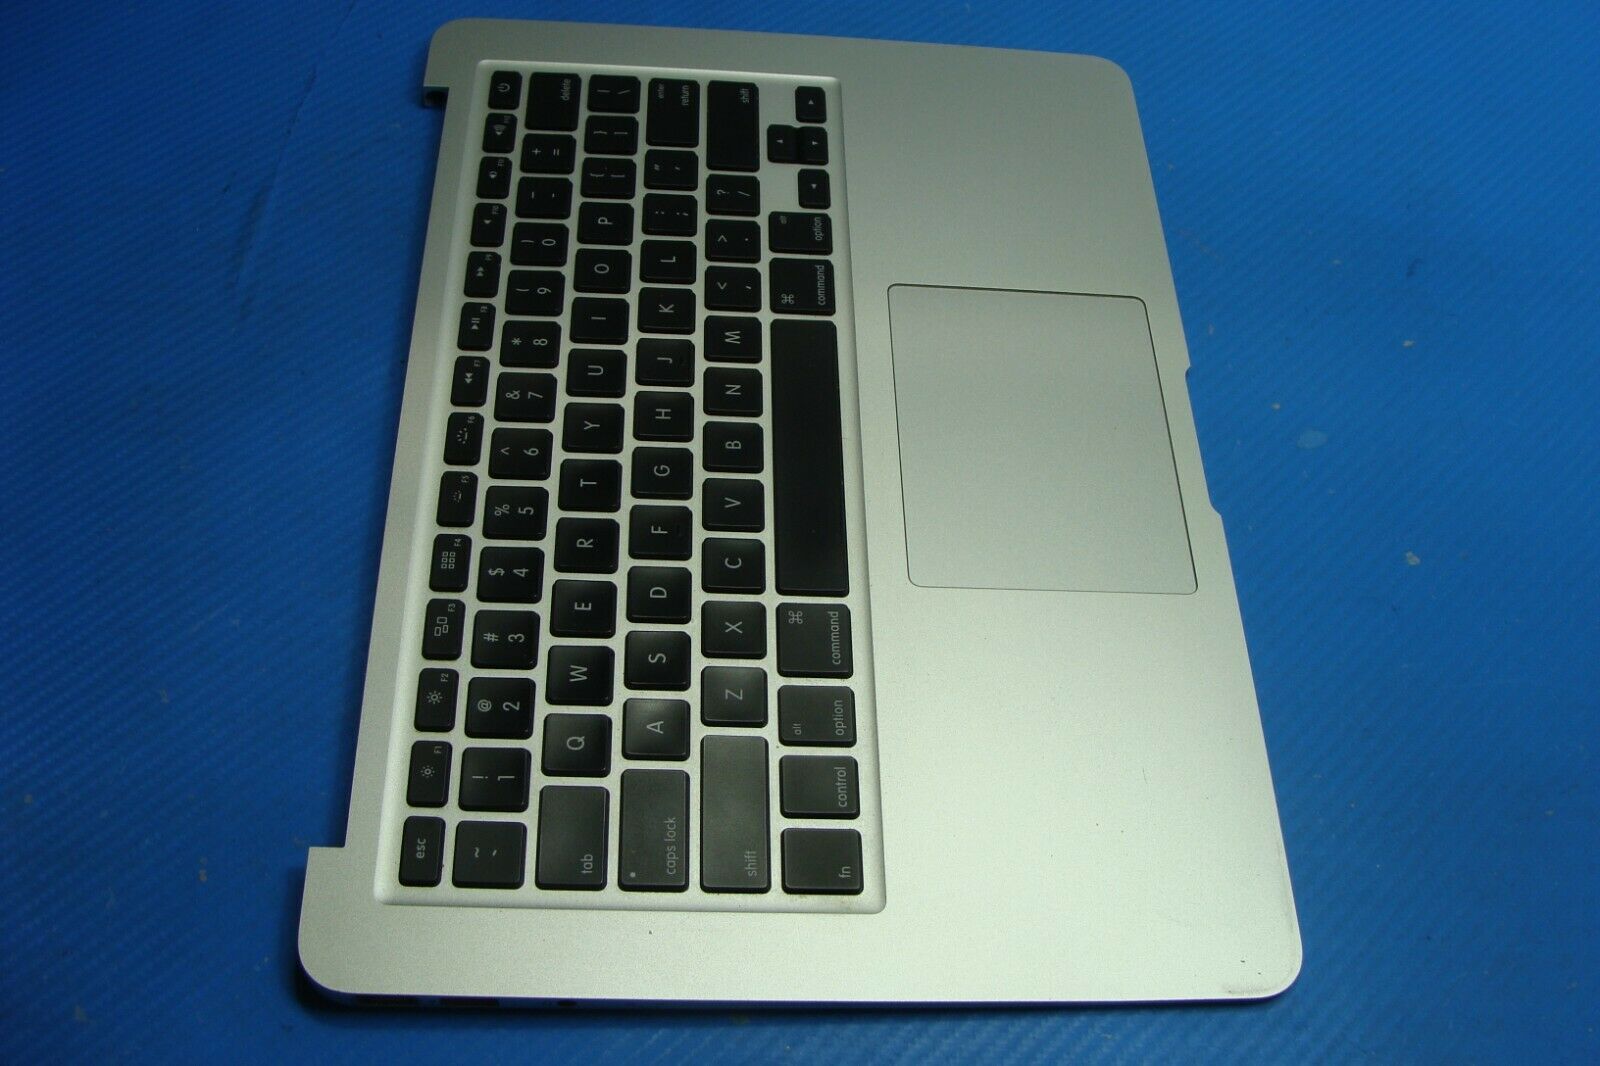 MacBook Air A1369 MC965LL/A Mid 2011 13